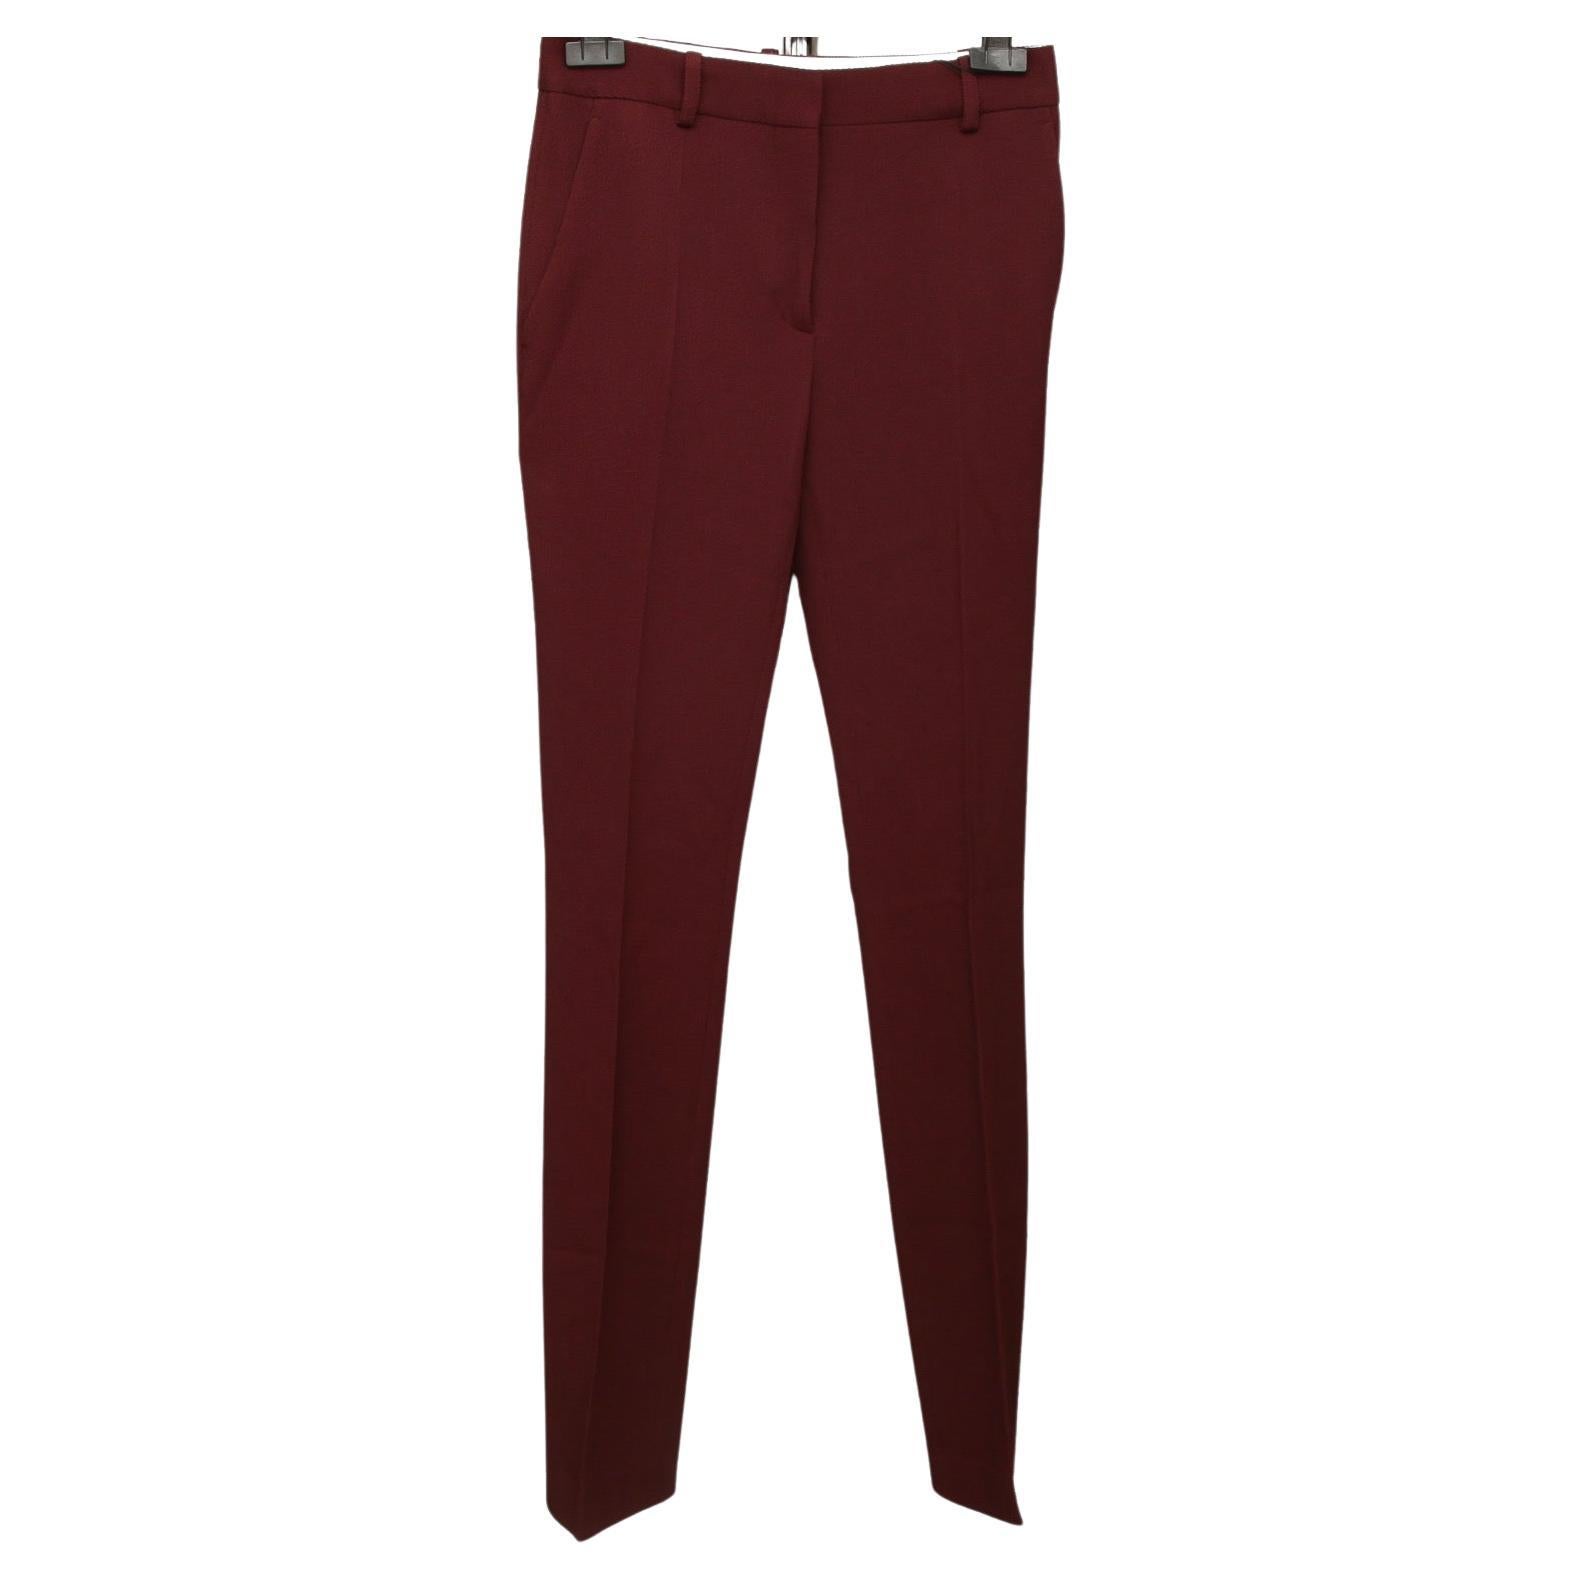 VICTORIA BECKHAM Bordeaux Wool Pant Trouser Pockets Zip Button Sz 4 BNWT 2019 For Sale